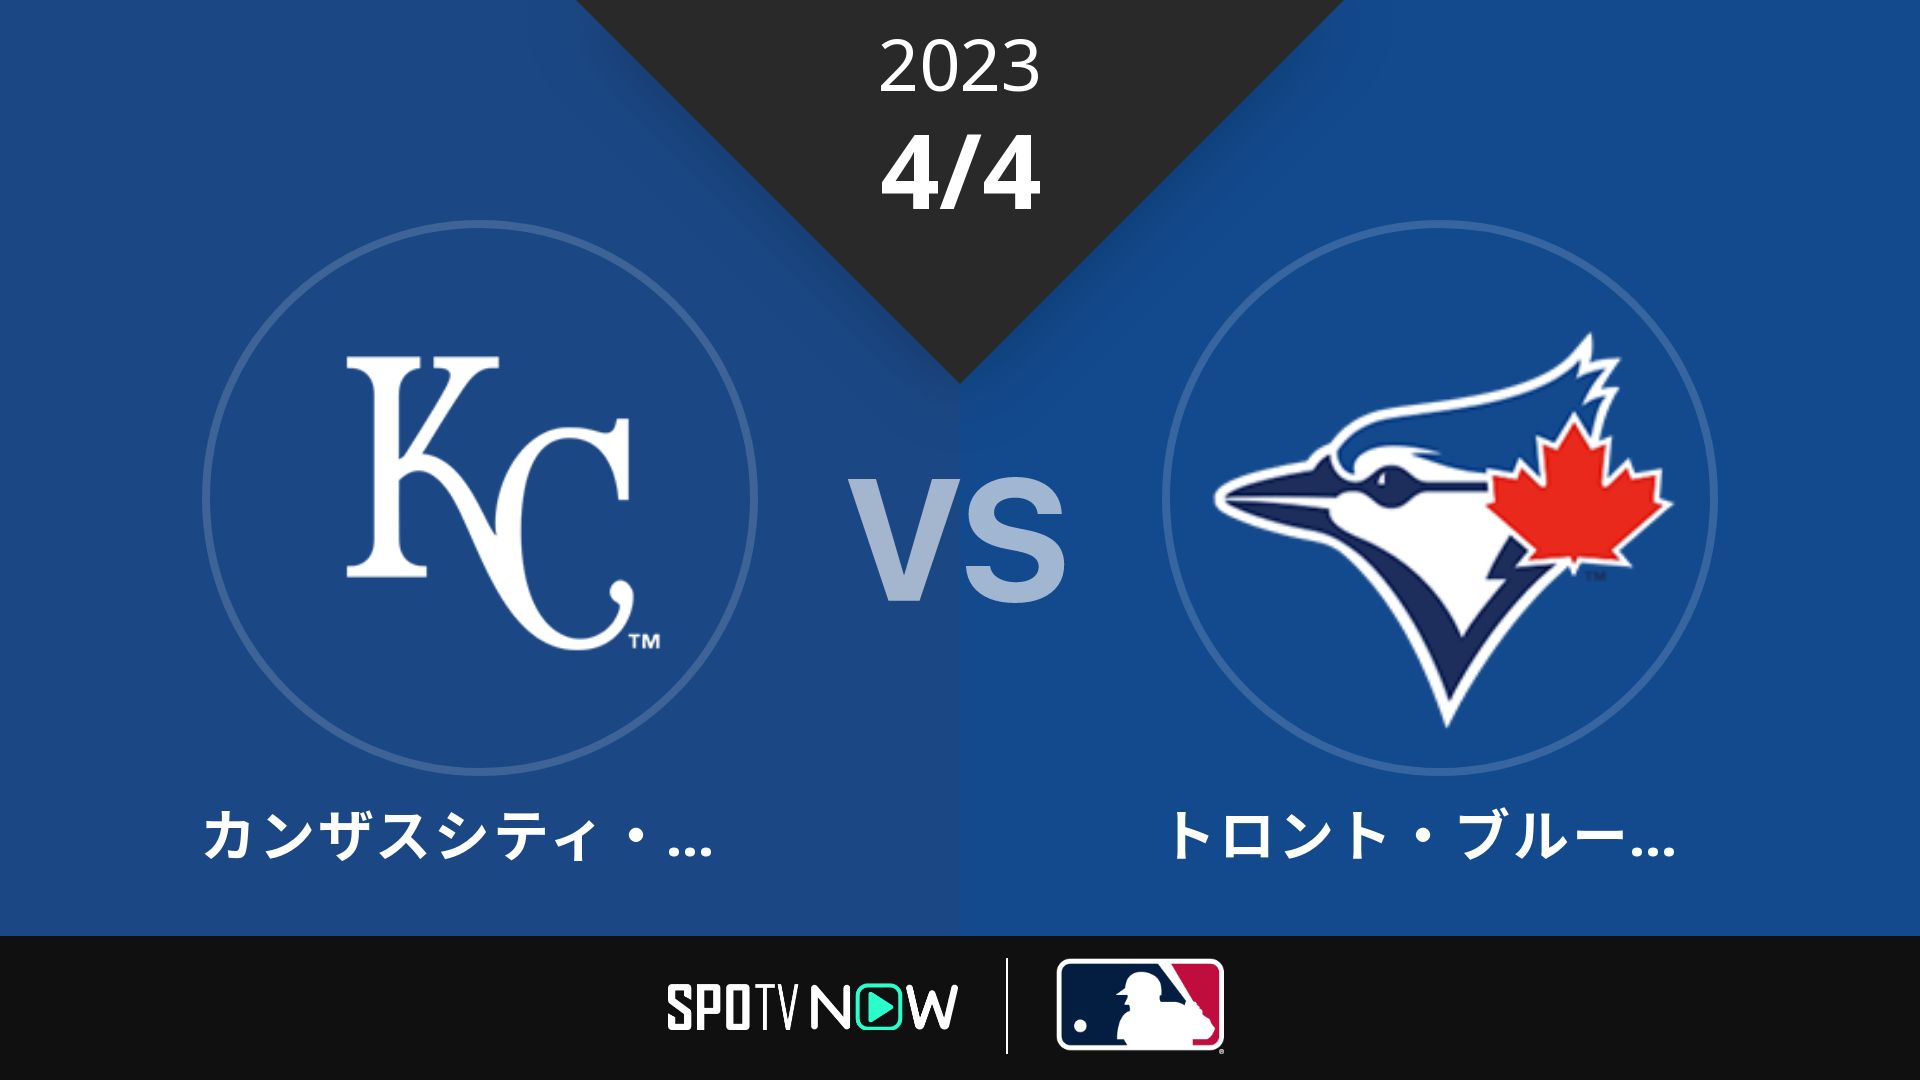 2023/4/4 ロイヤルズ vs ブルージェイズ [MLB]